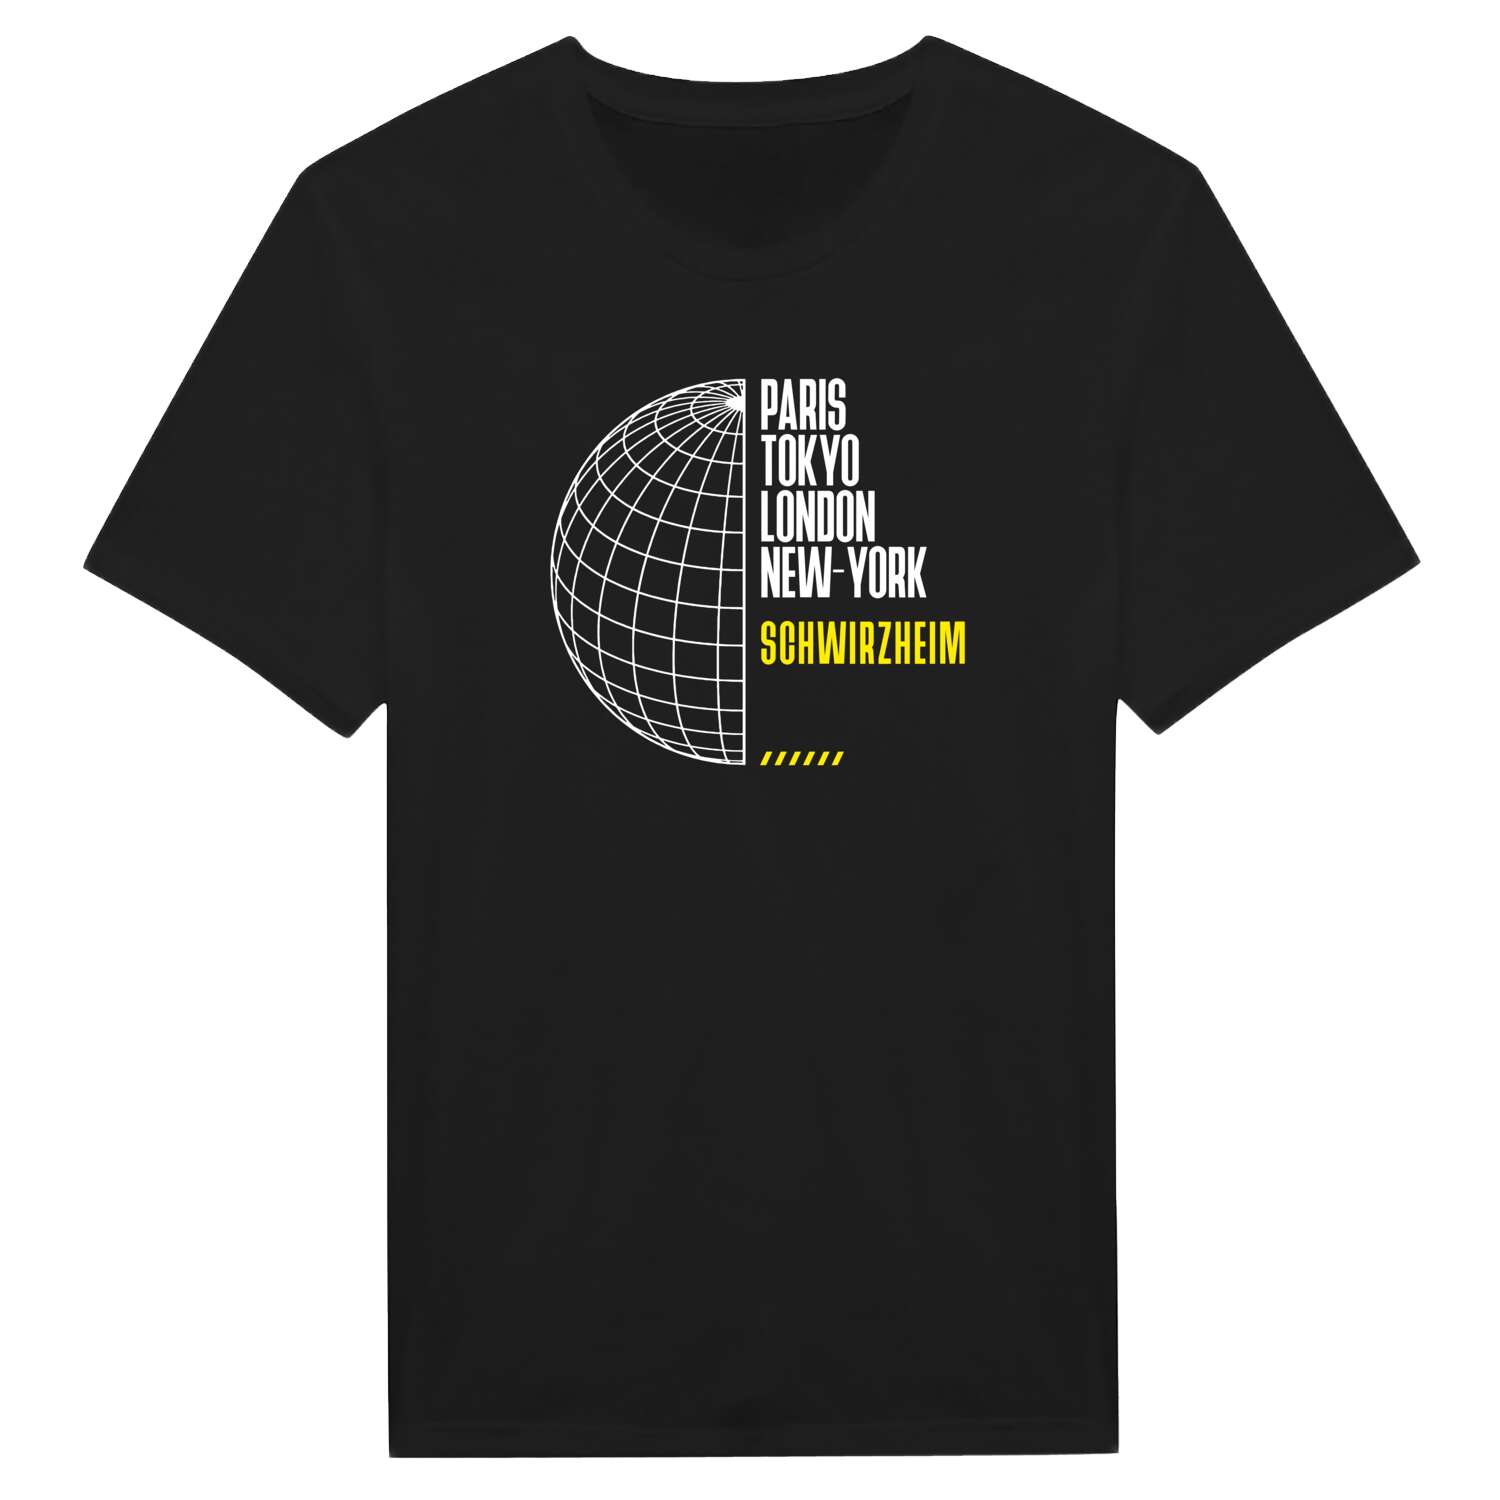 Schwirzheim T-Shirt »Paris Tokyo London«